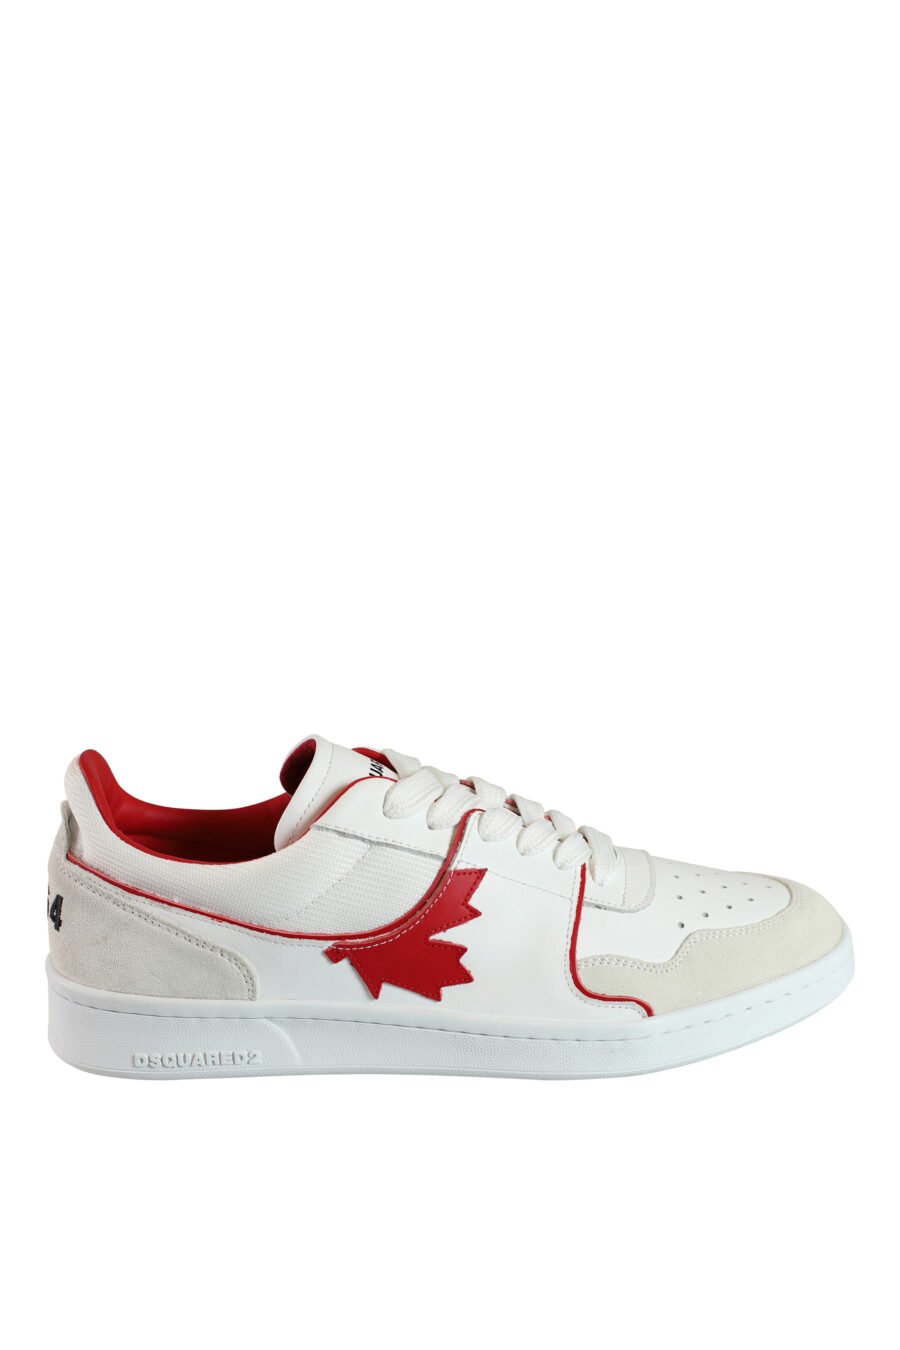 Zapatillas blancas mix con logo y detalles en rojo - 8055777188194